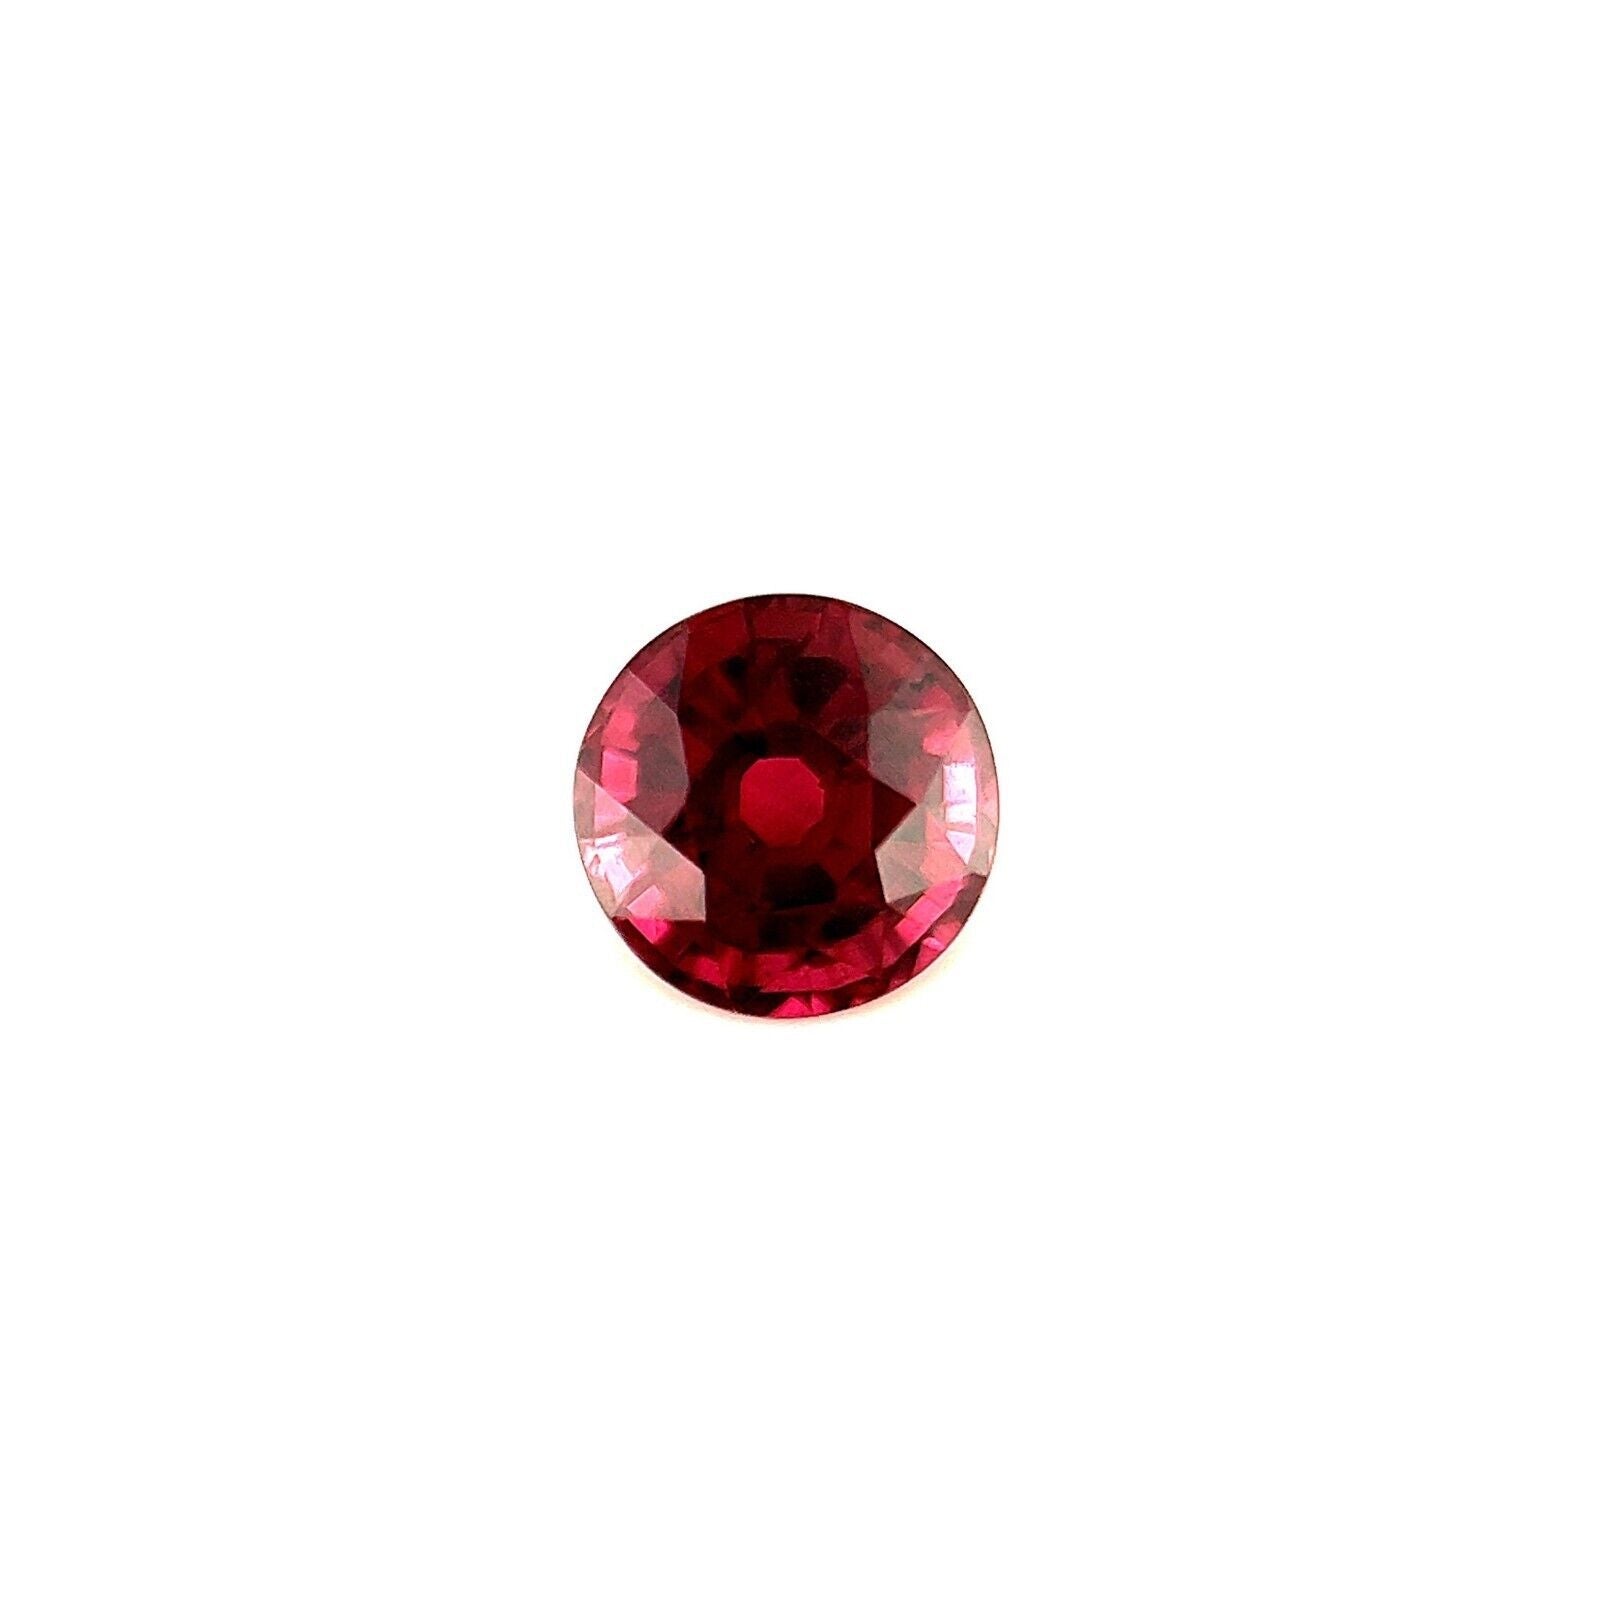 1.29 Carat Vivid Purple Pink Rhodolite Garnet Round Brilliant Cut Gemstone For Sale